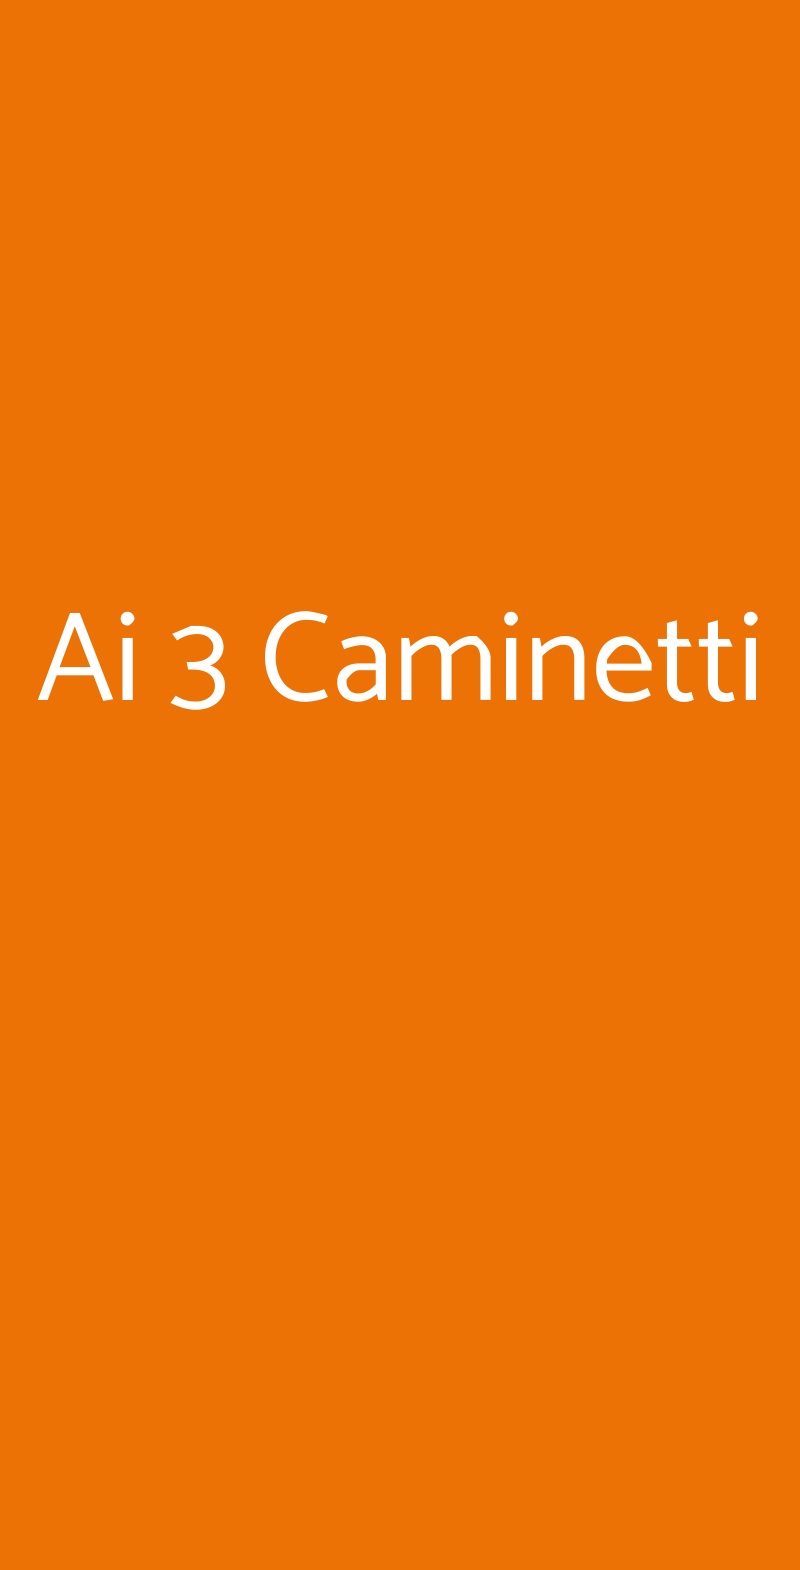 Ai 3 Caminetti Milano menù 1 pagina